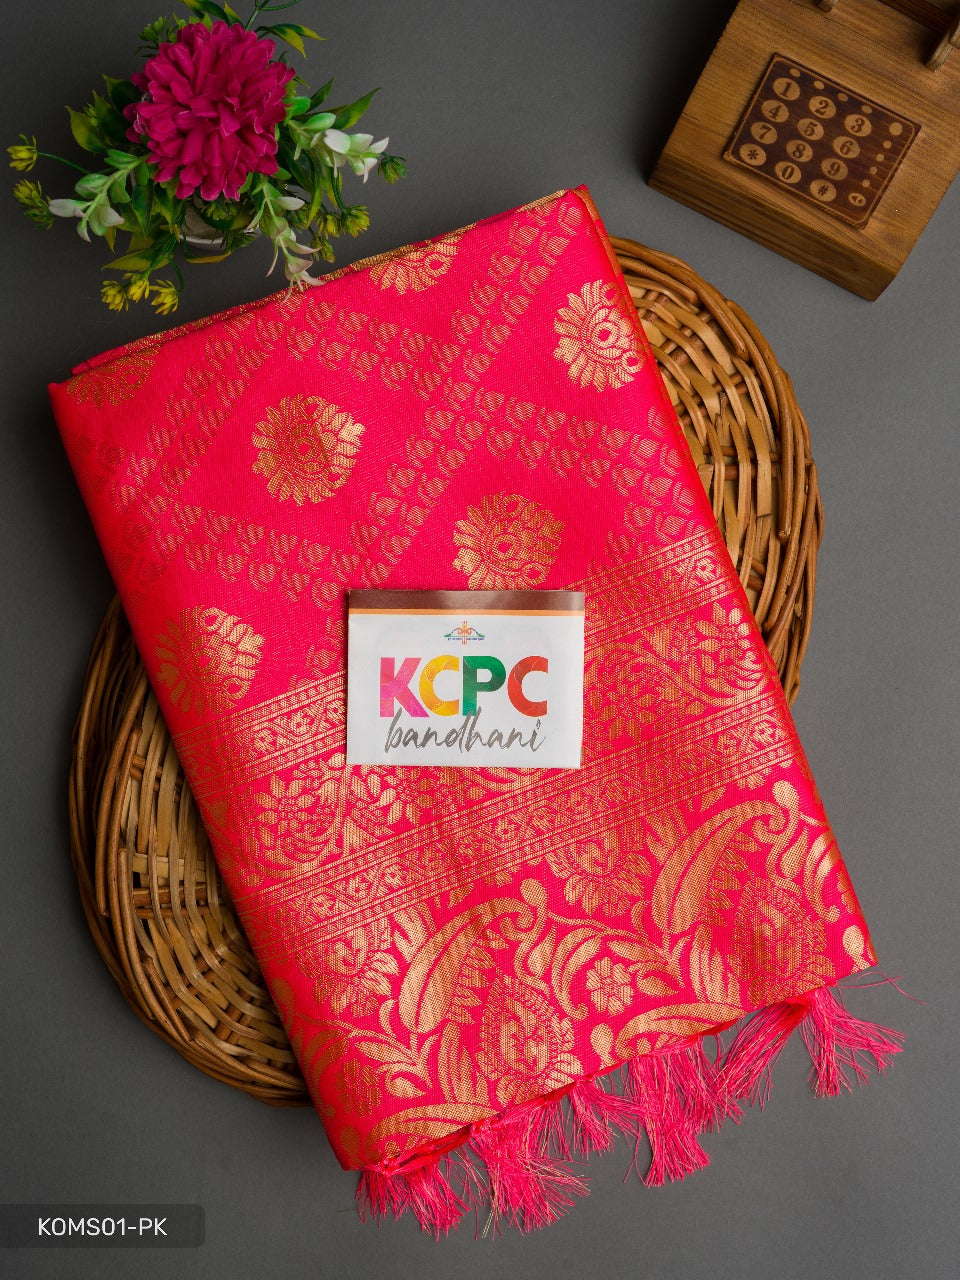 Latest Banarasi Zari Weaving Sarees Best Collection For Wedding Gift Or Kcpc Gajari Saree